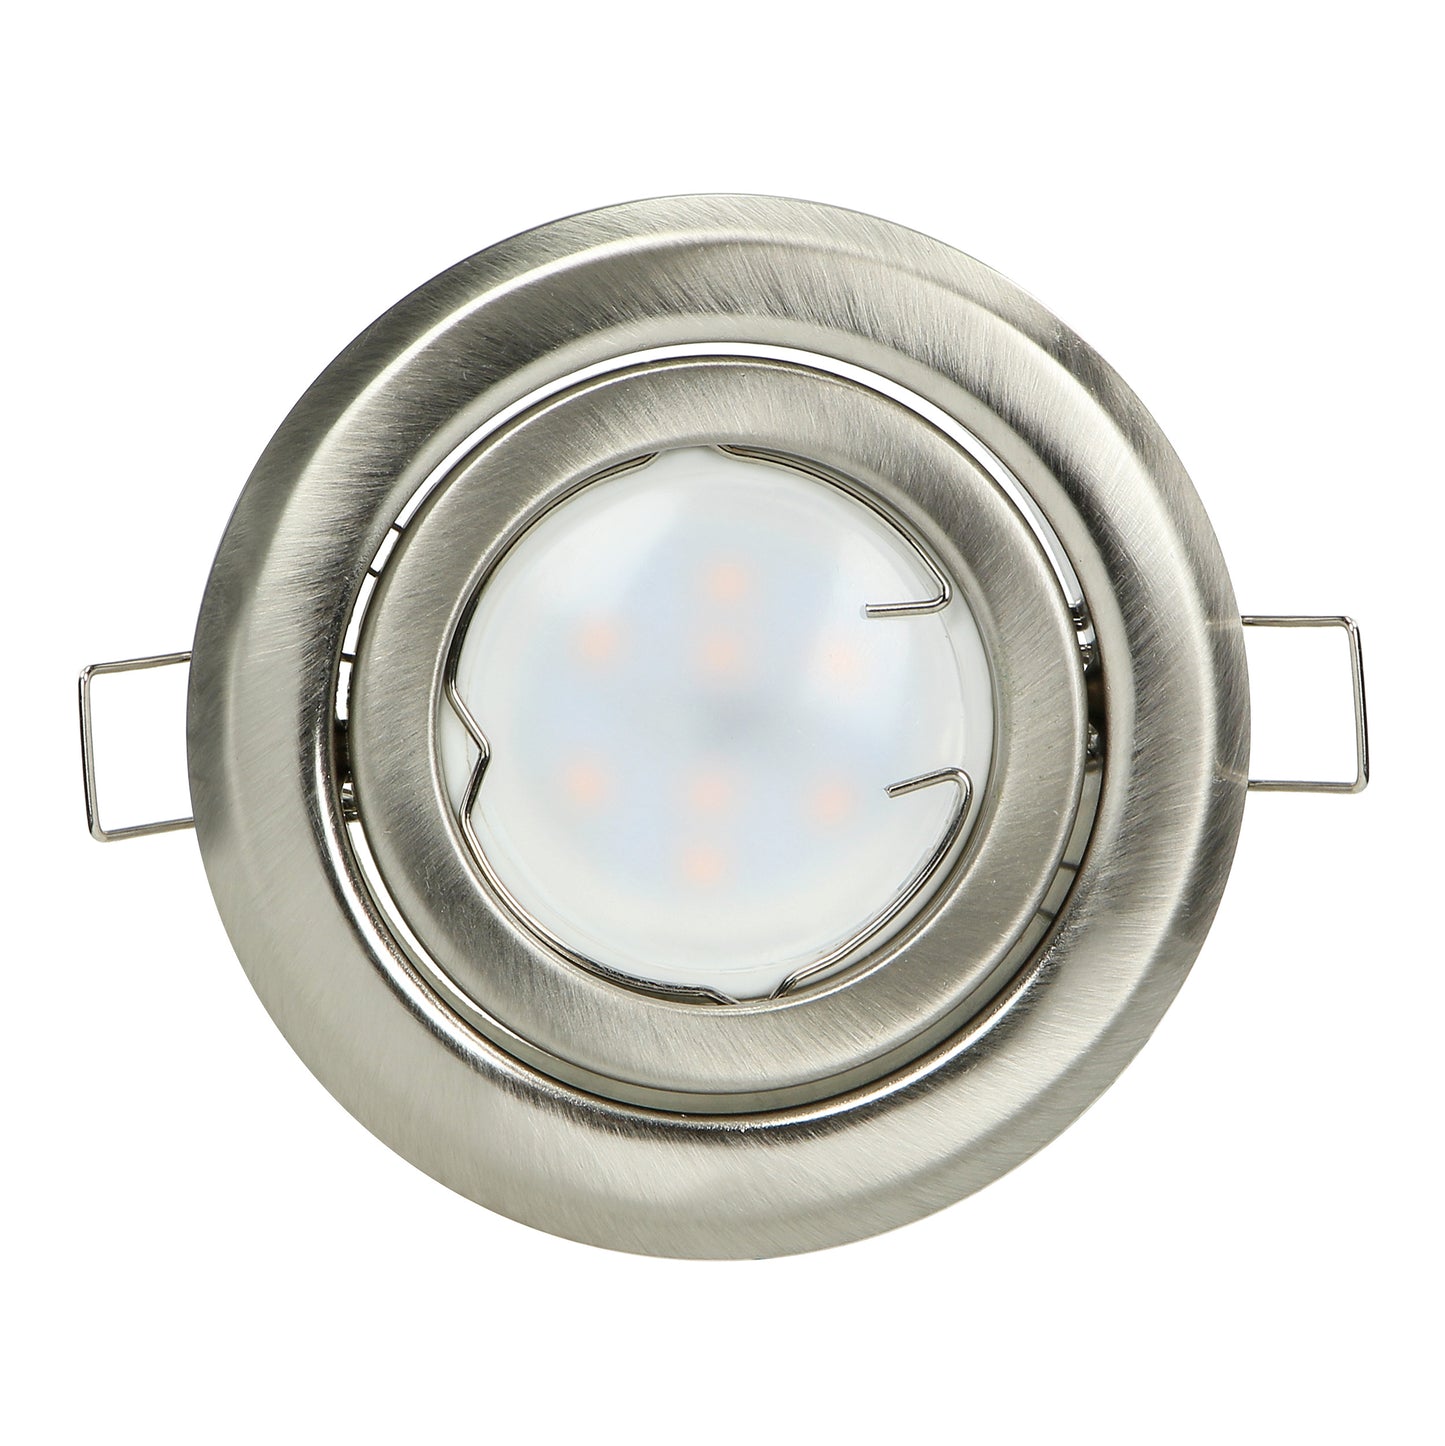 SUTRI RM dekorativer Spot-Rahmen, MR16/GU10 max 50W, rund, verstellbar, satin